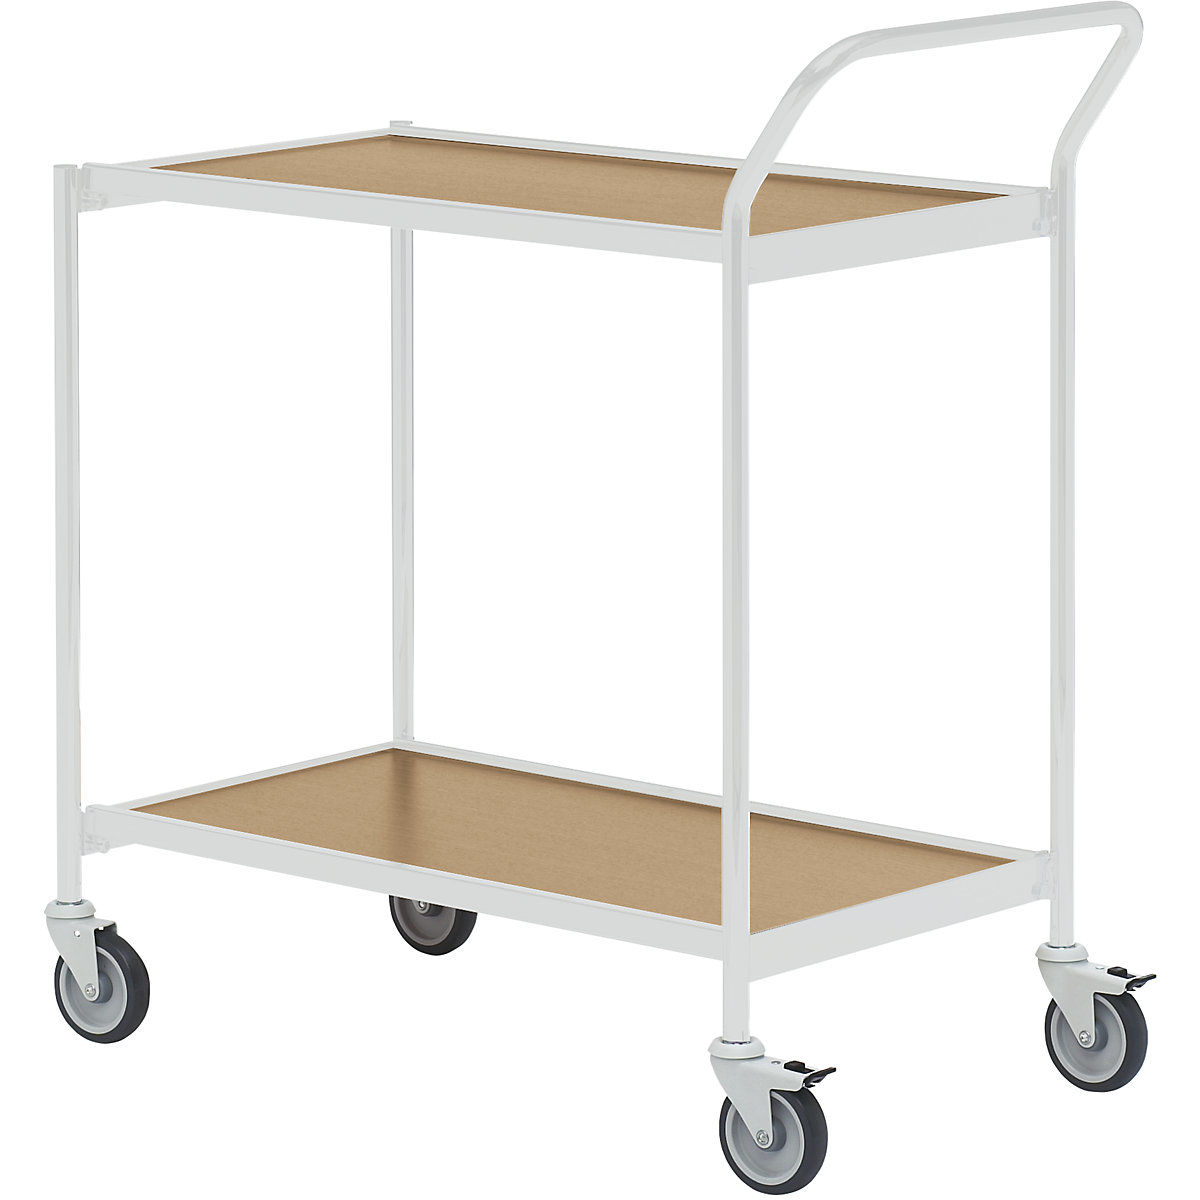 Table trolley – HelgeNyberg, 2 shelves, LxW 800 x 420 mm, grey/oak, 5+ items-42